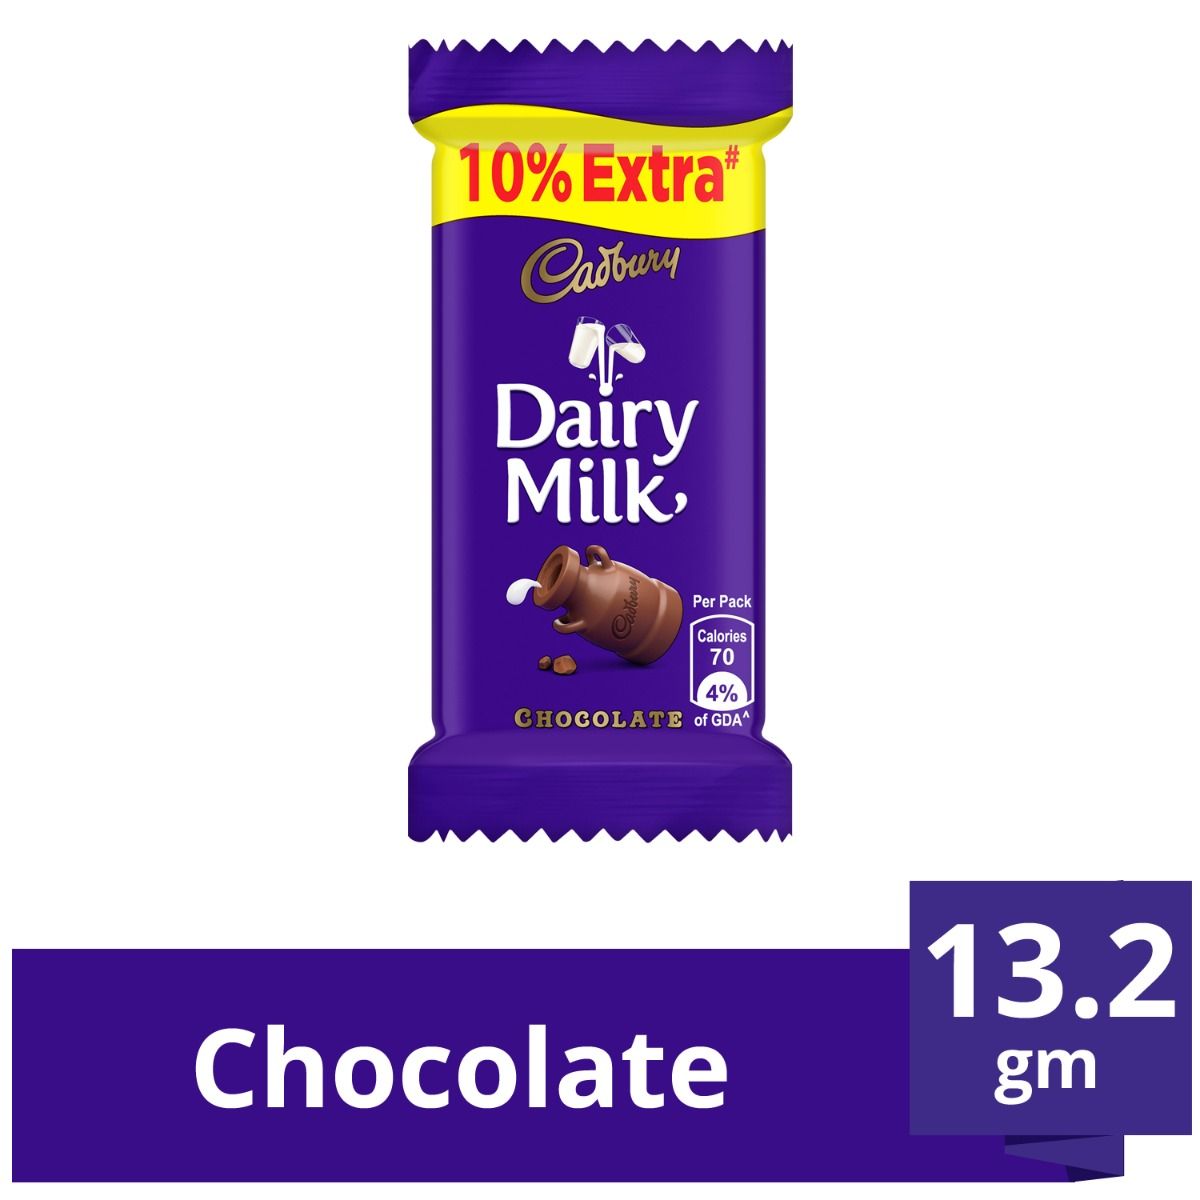 Cadbury Dairy Milk Chocolate Bar, 13.2 gm, Pack of 1 